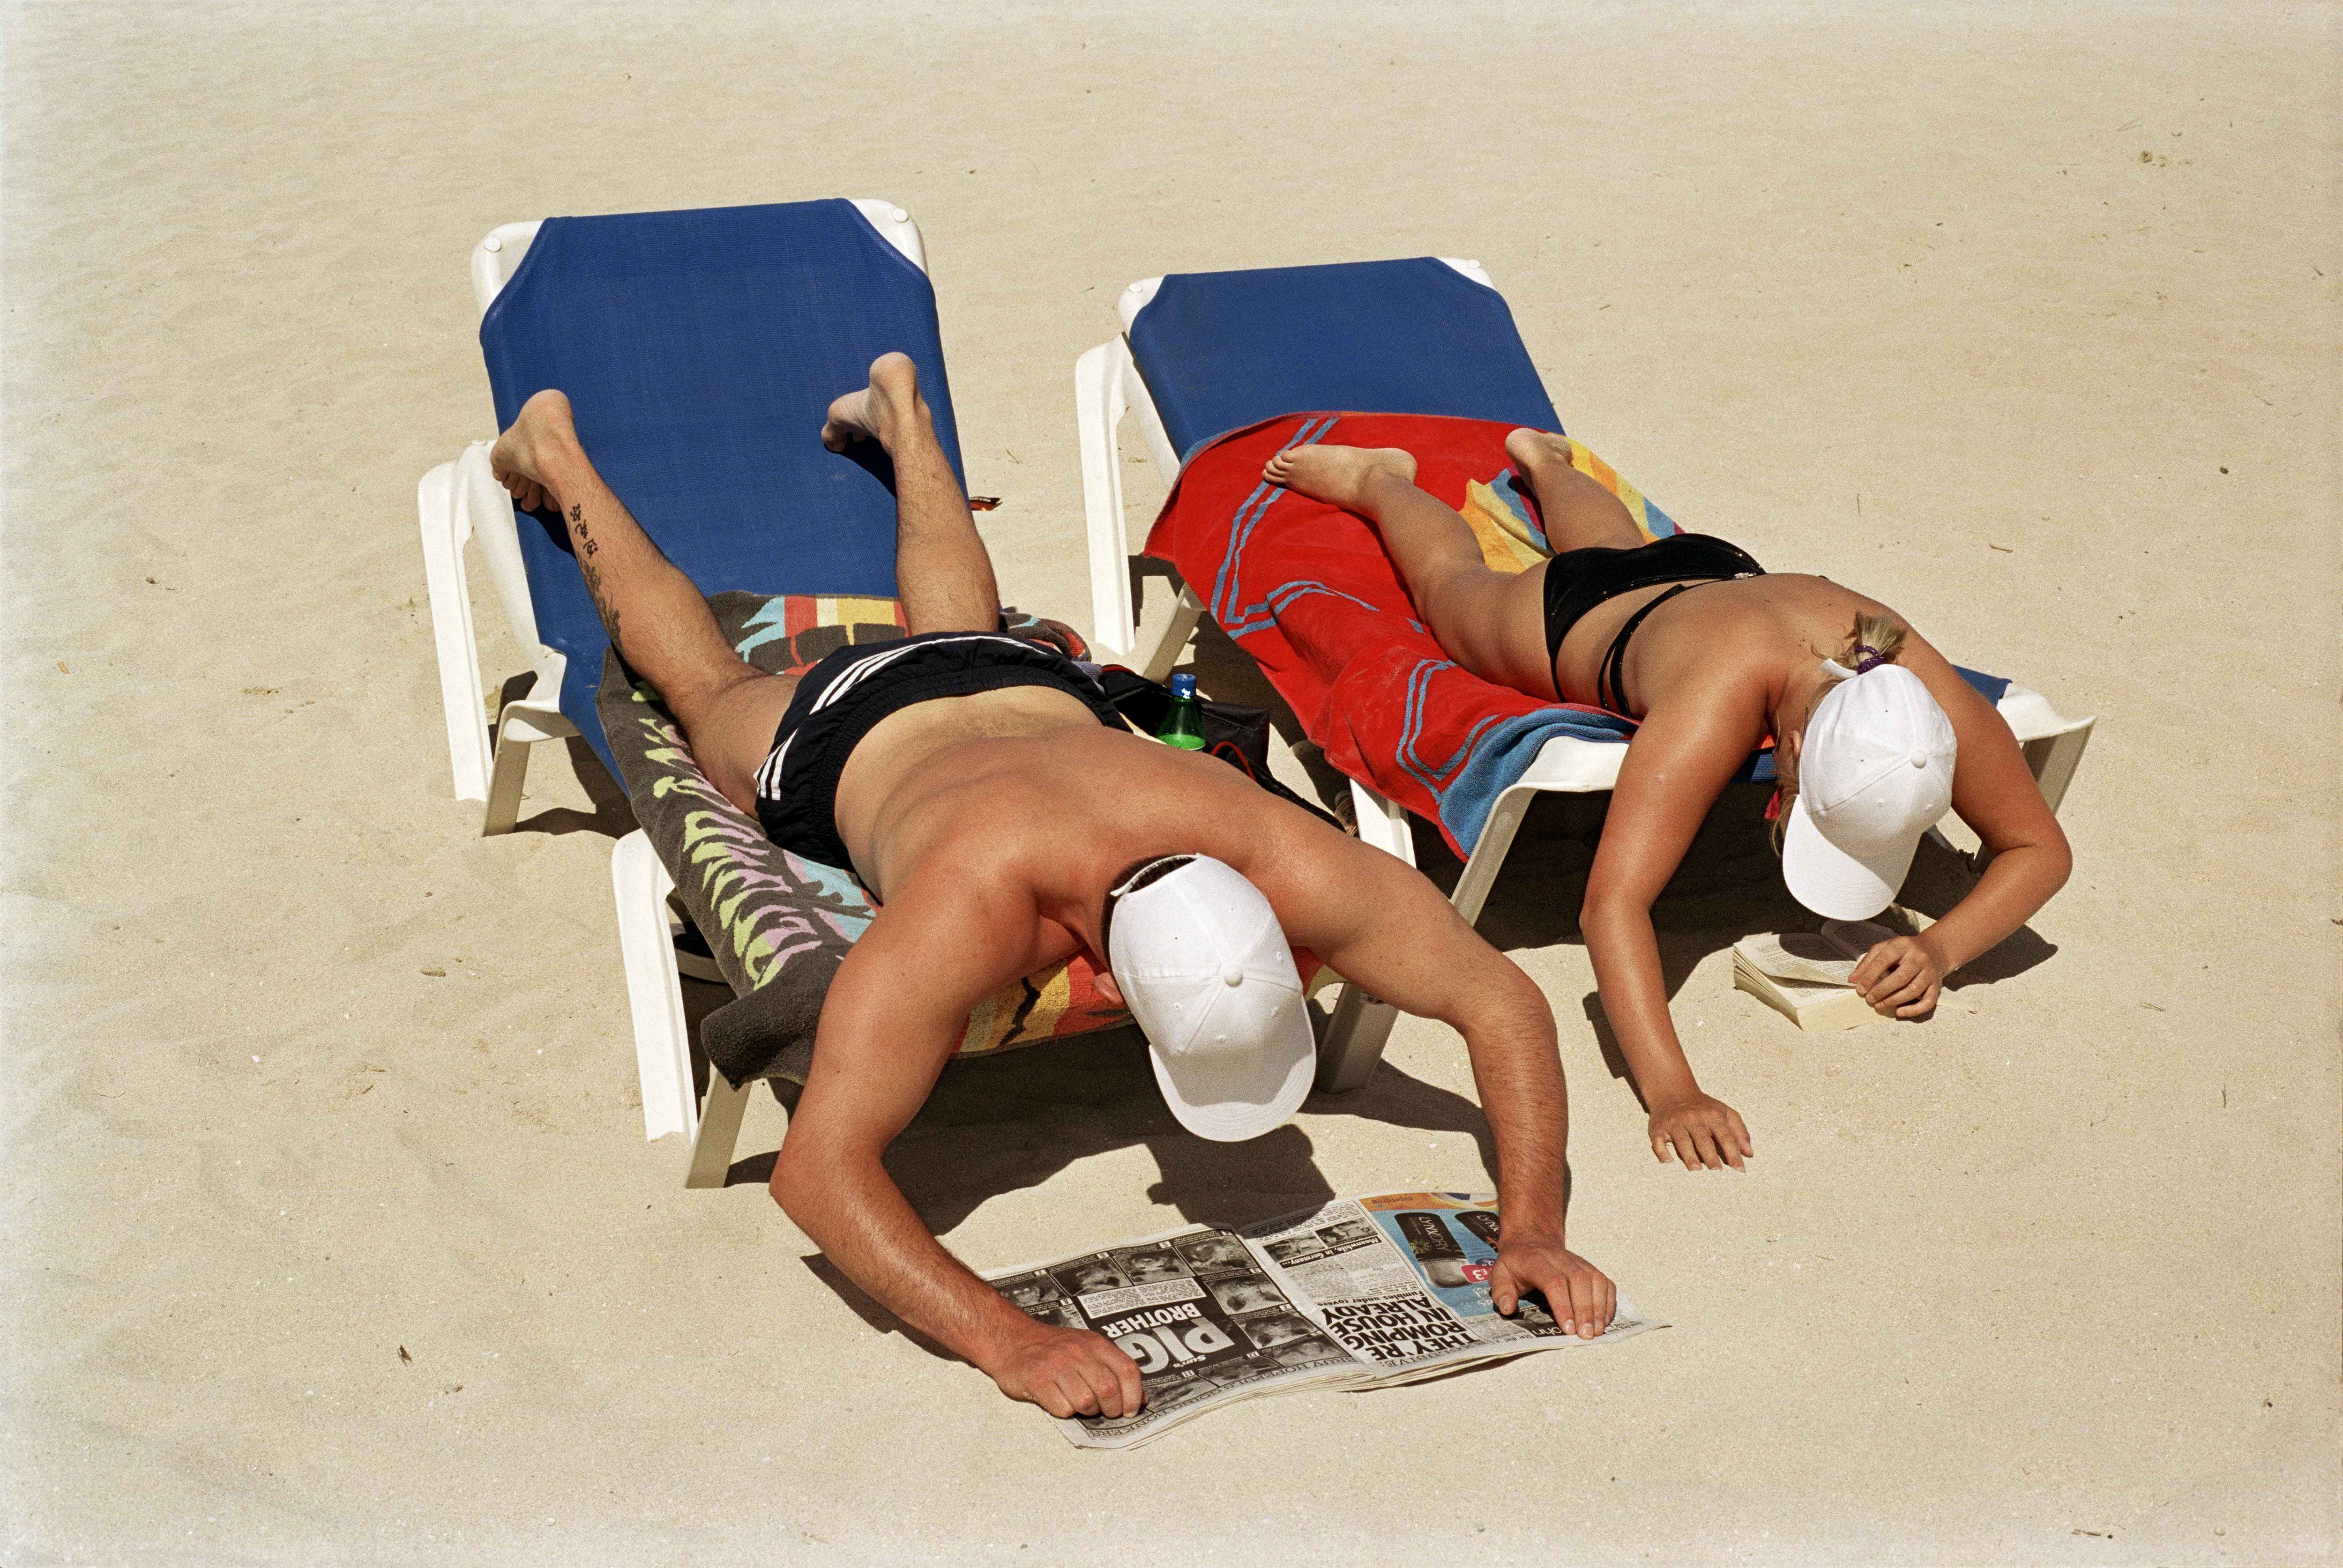 SPAIN. Majorca. Magaluf. Sunbathing and reading on the beach. 2003.